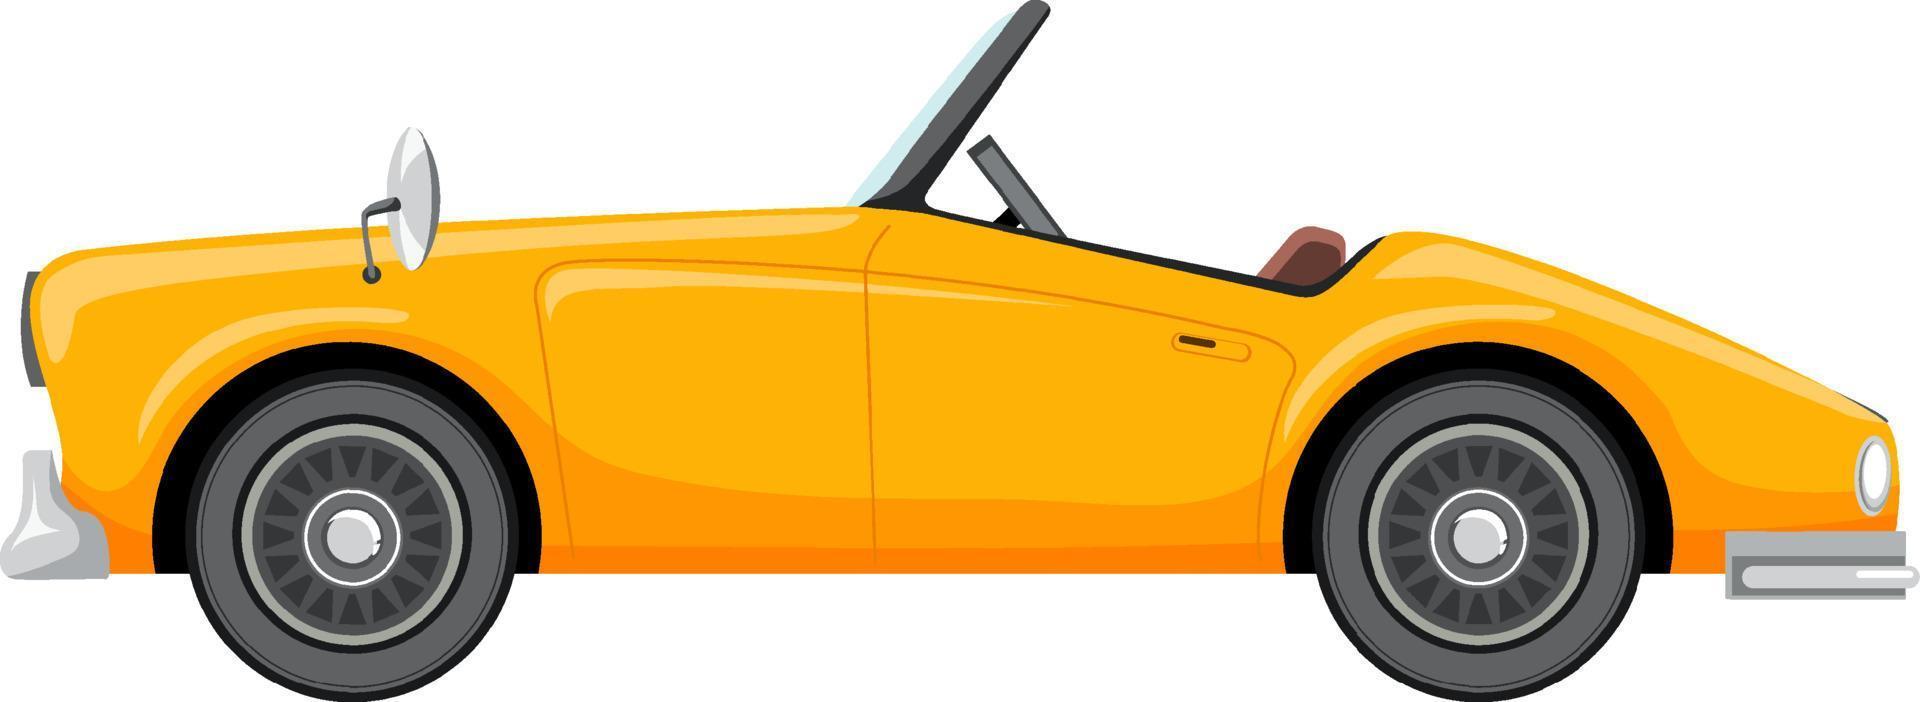 carro amarelo clássico em estilo cartoon vetor